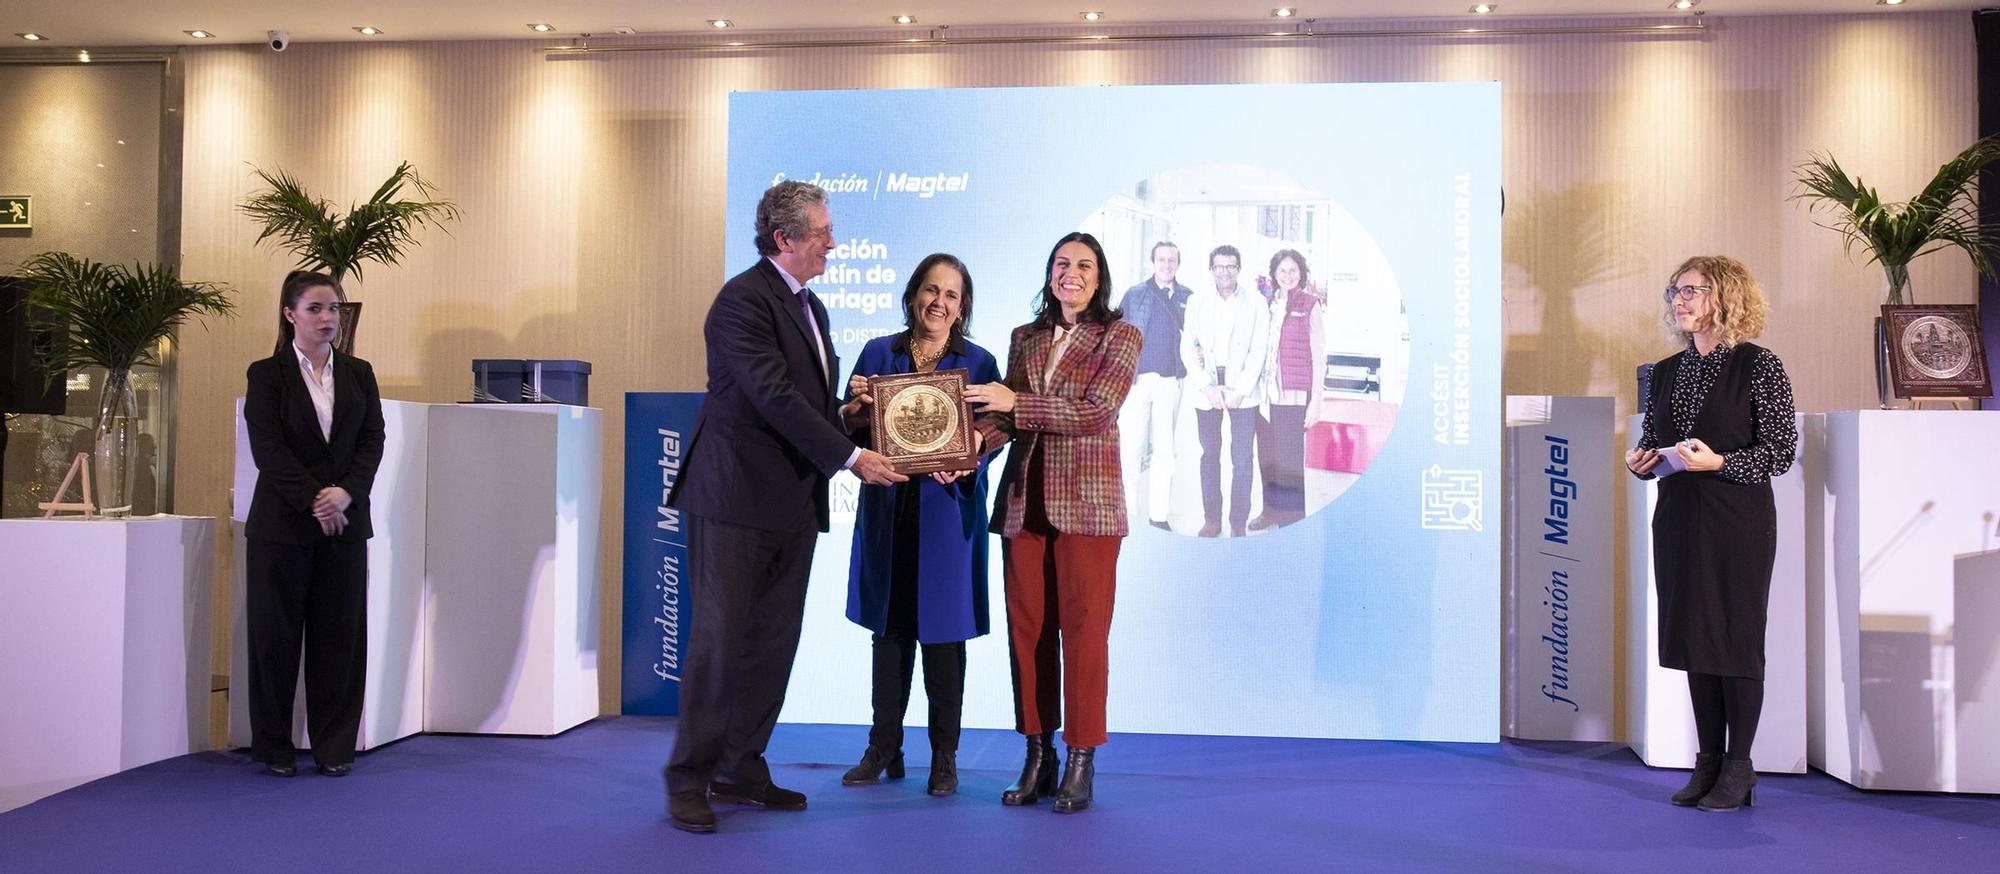 Fundación Magtel celebra la IV edición de sus Premios en el ámbito social